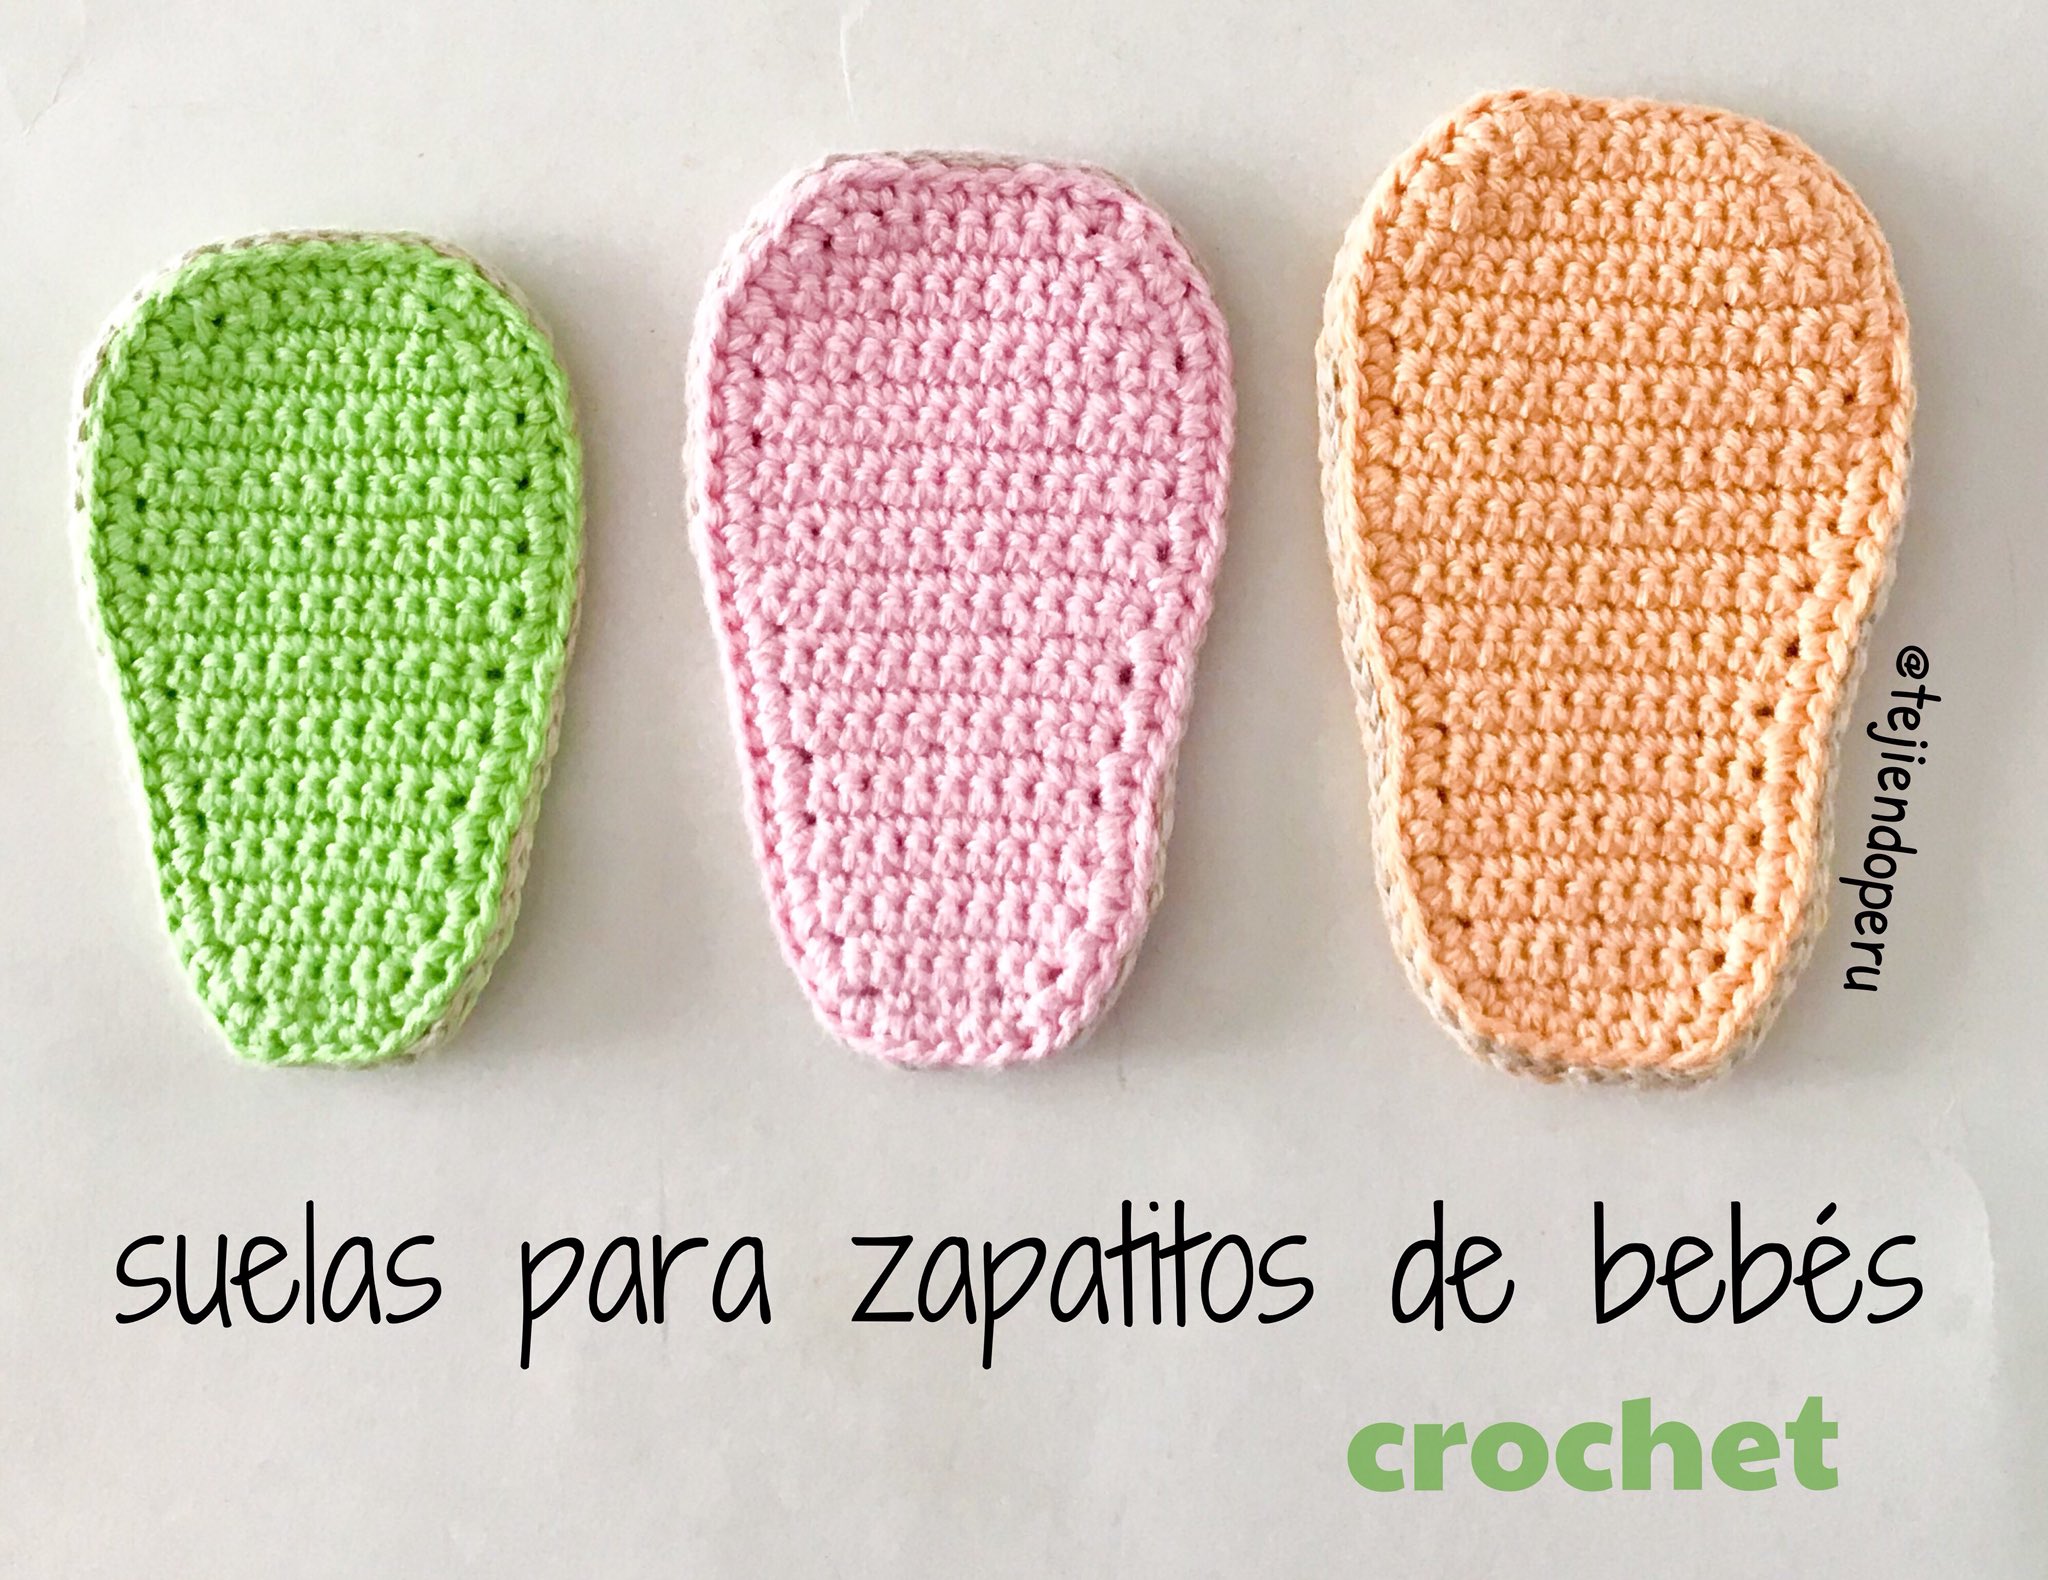 Perú on Twitter: "La forma más fácil de tejer suelas para crochet: ¡en tejido recto! 😁 En este video les mostramos cómo hacerlas en 3 tallas para bebés: